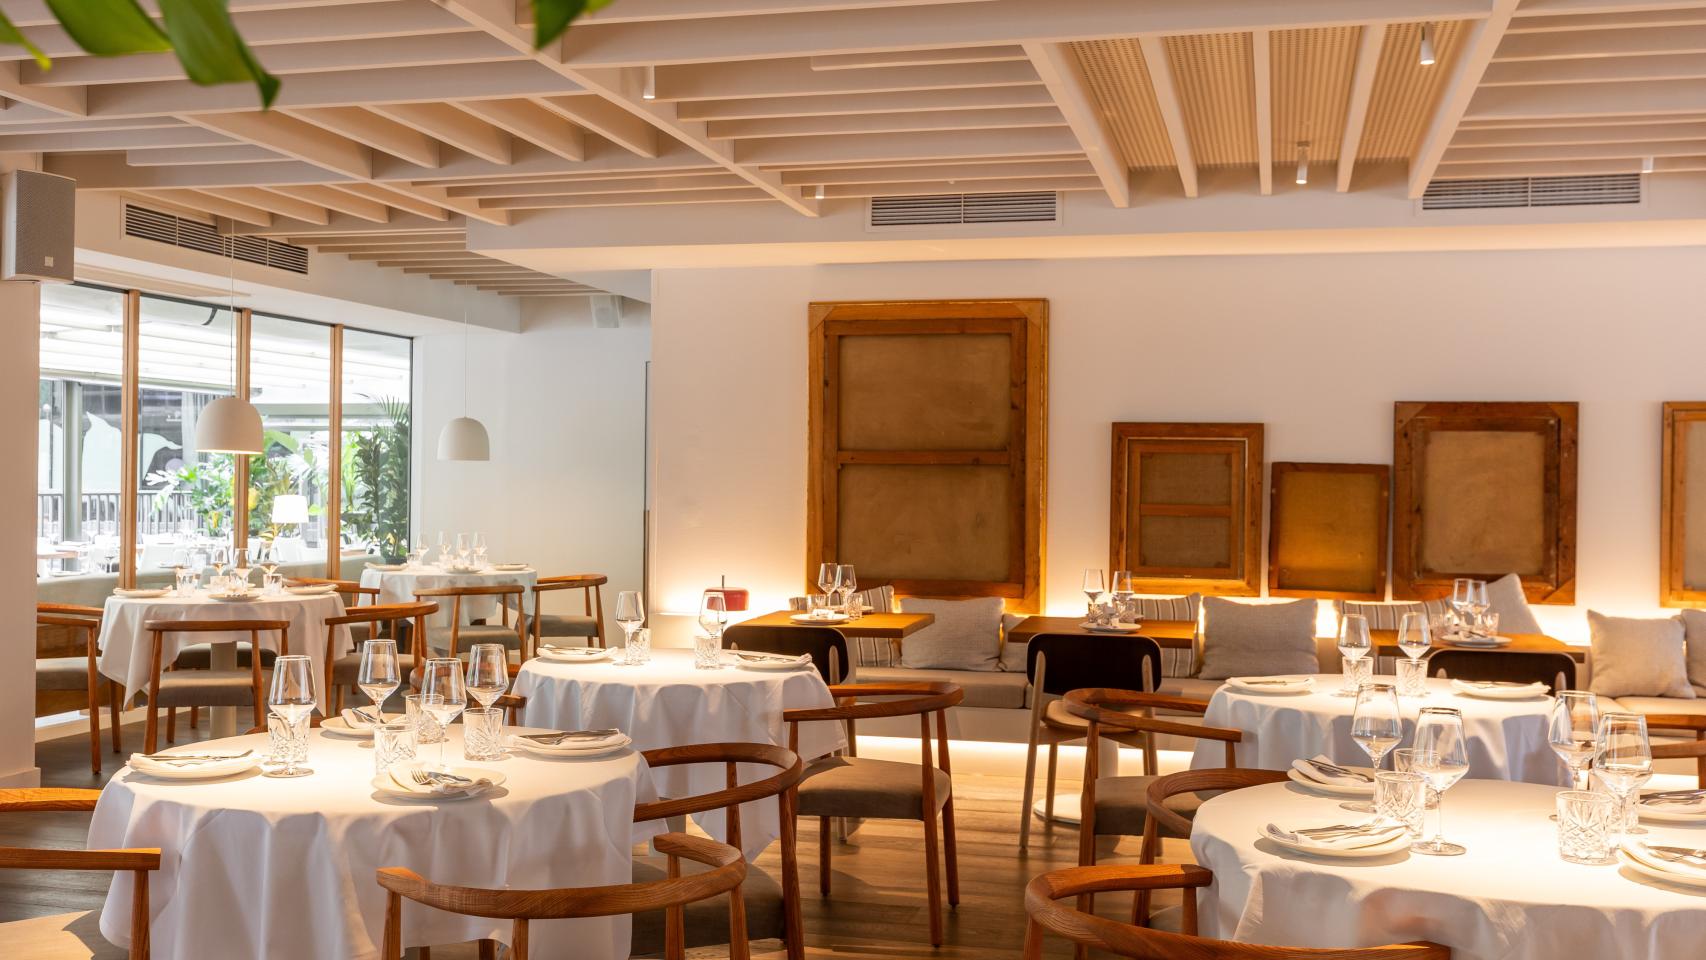 El nuevo restaurante de cocina mediterránea 'healthy' en Barcelona con terraza y música en vivo.